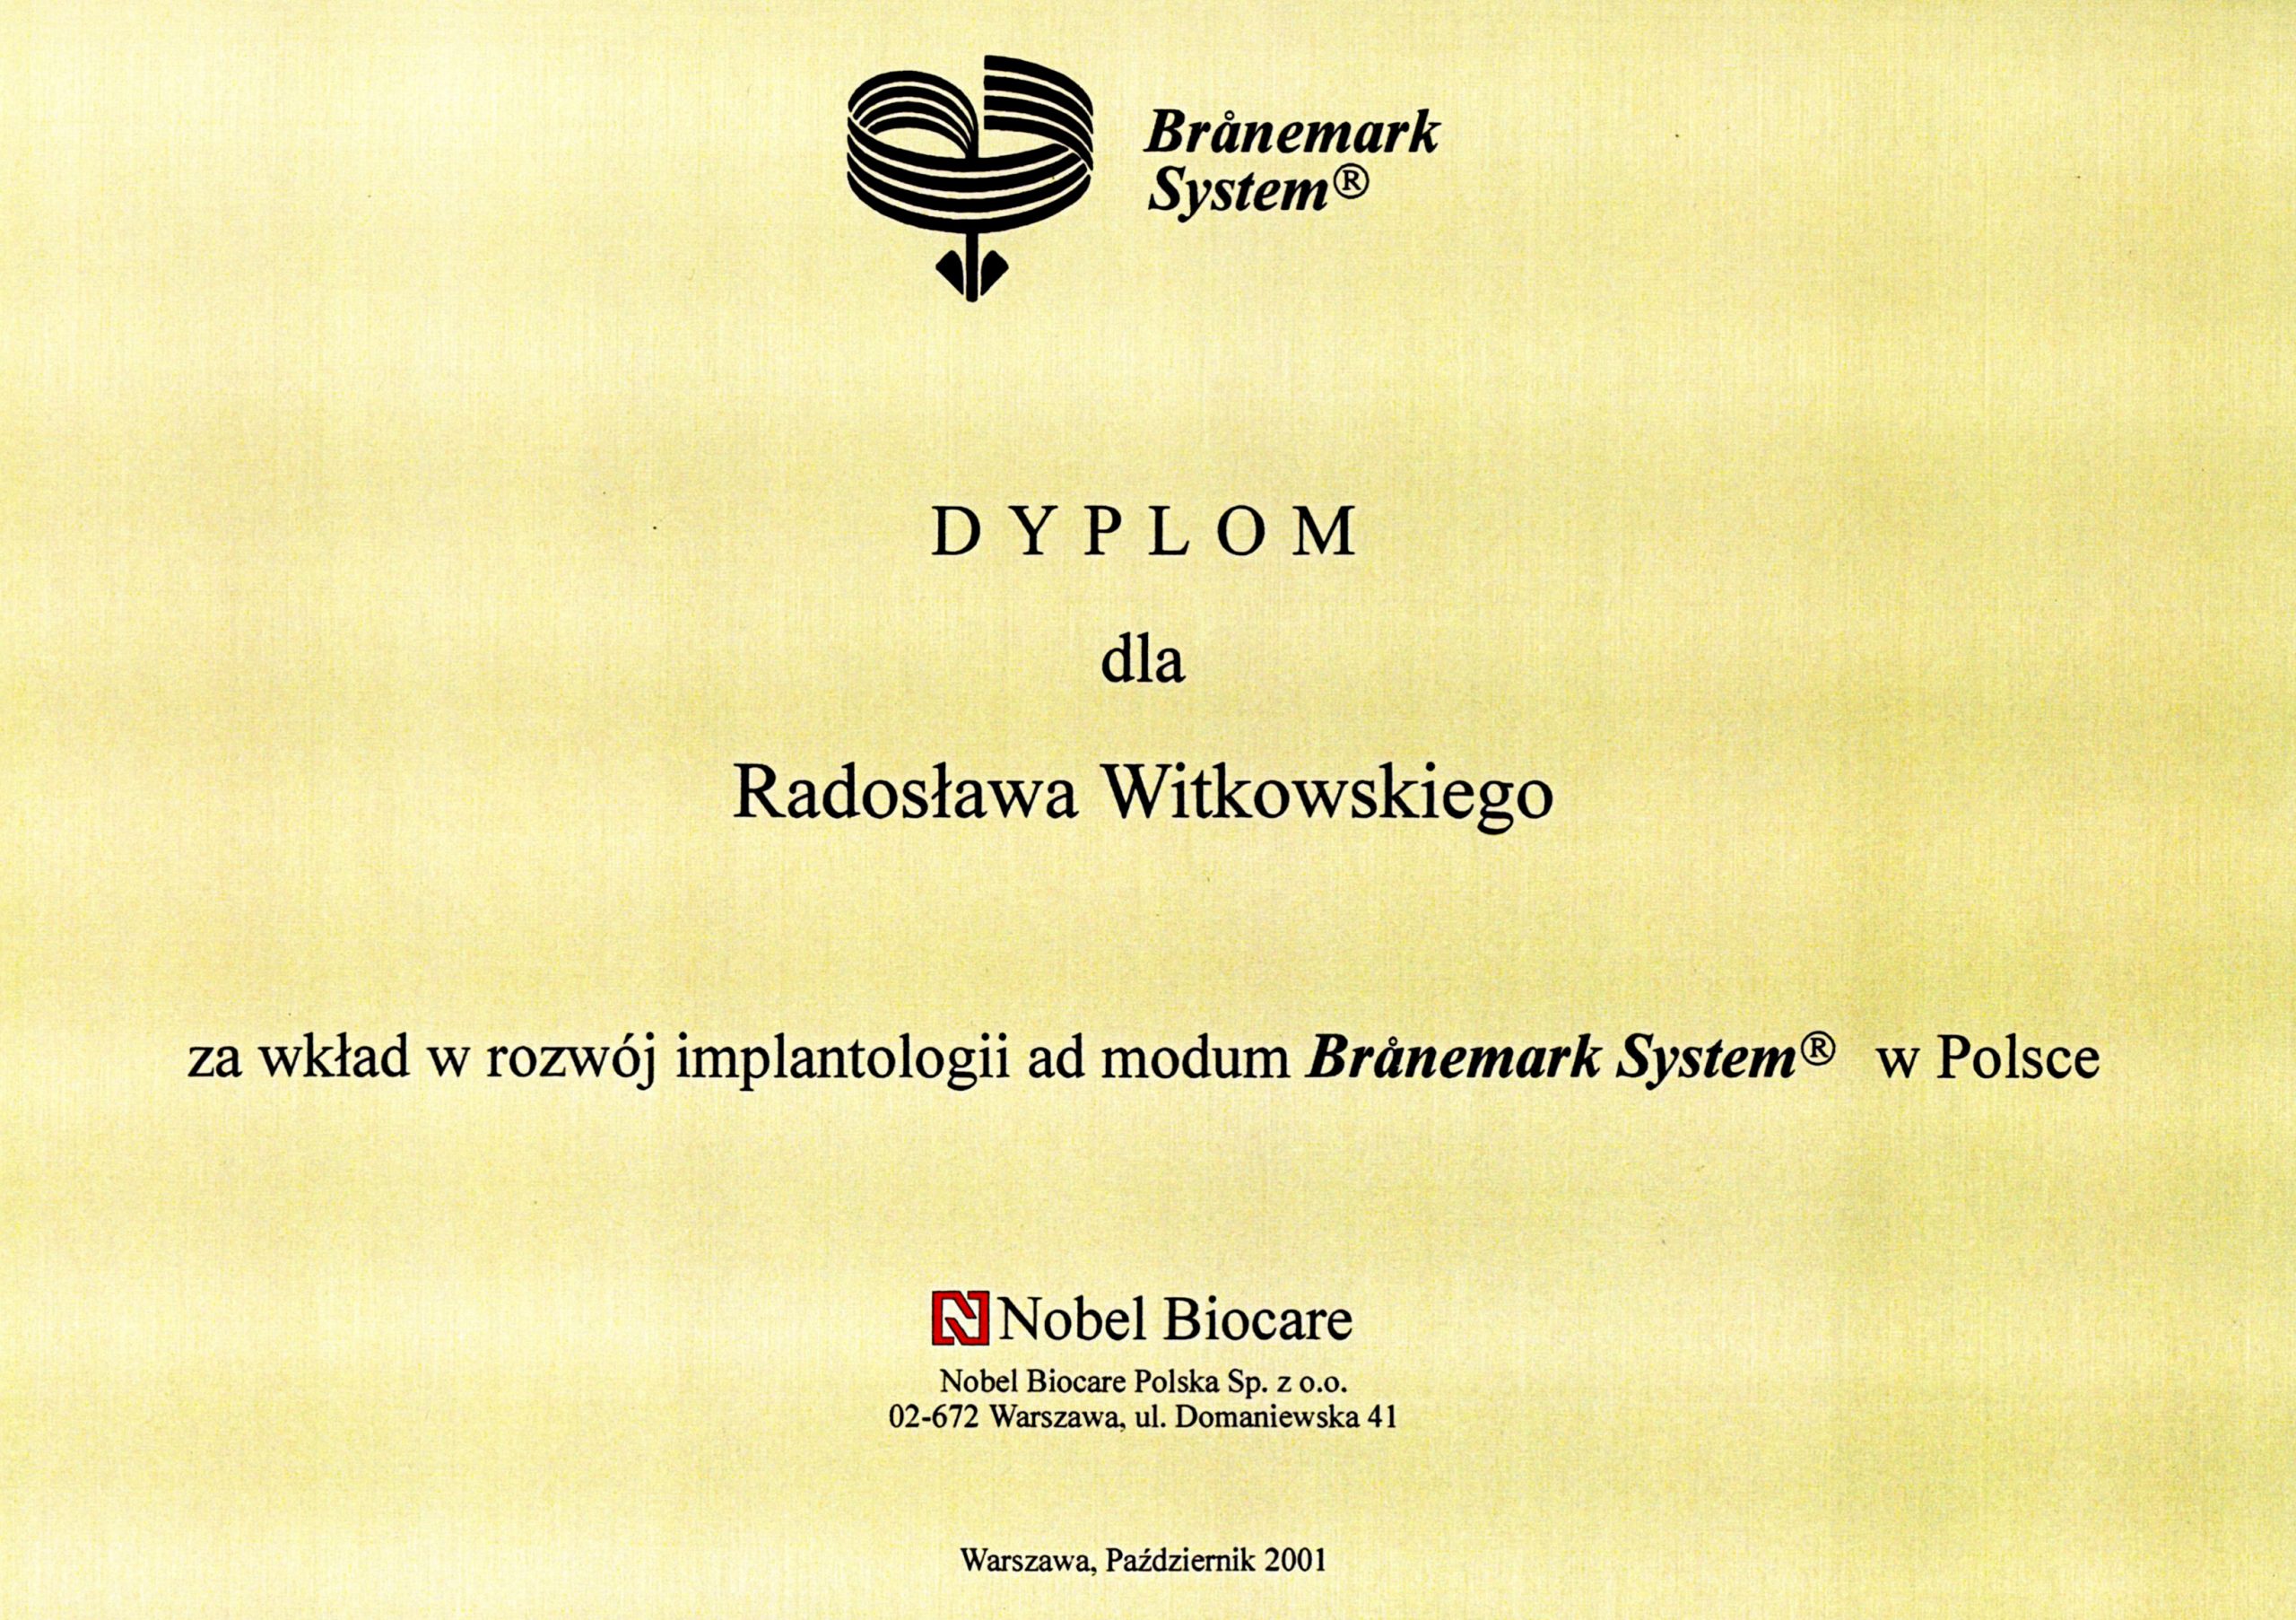 Radosław Witkowski certyfikat 27